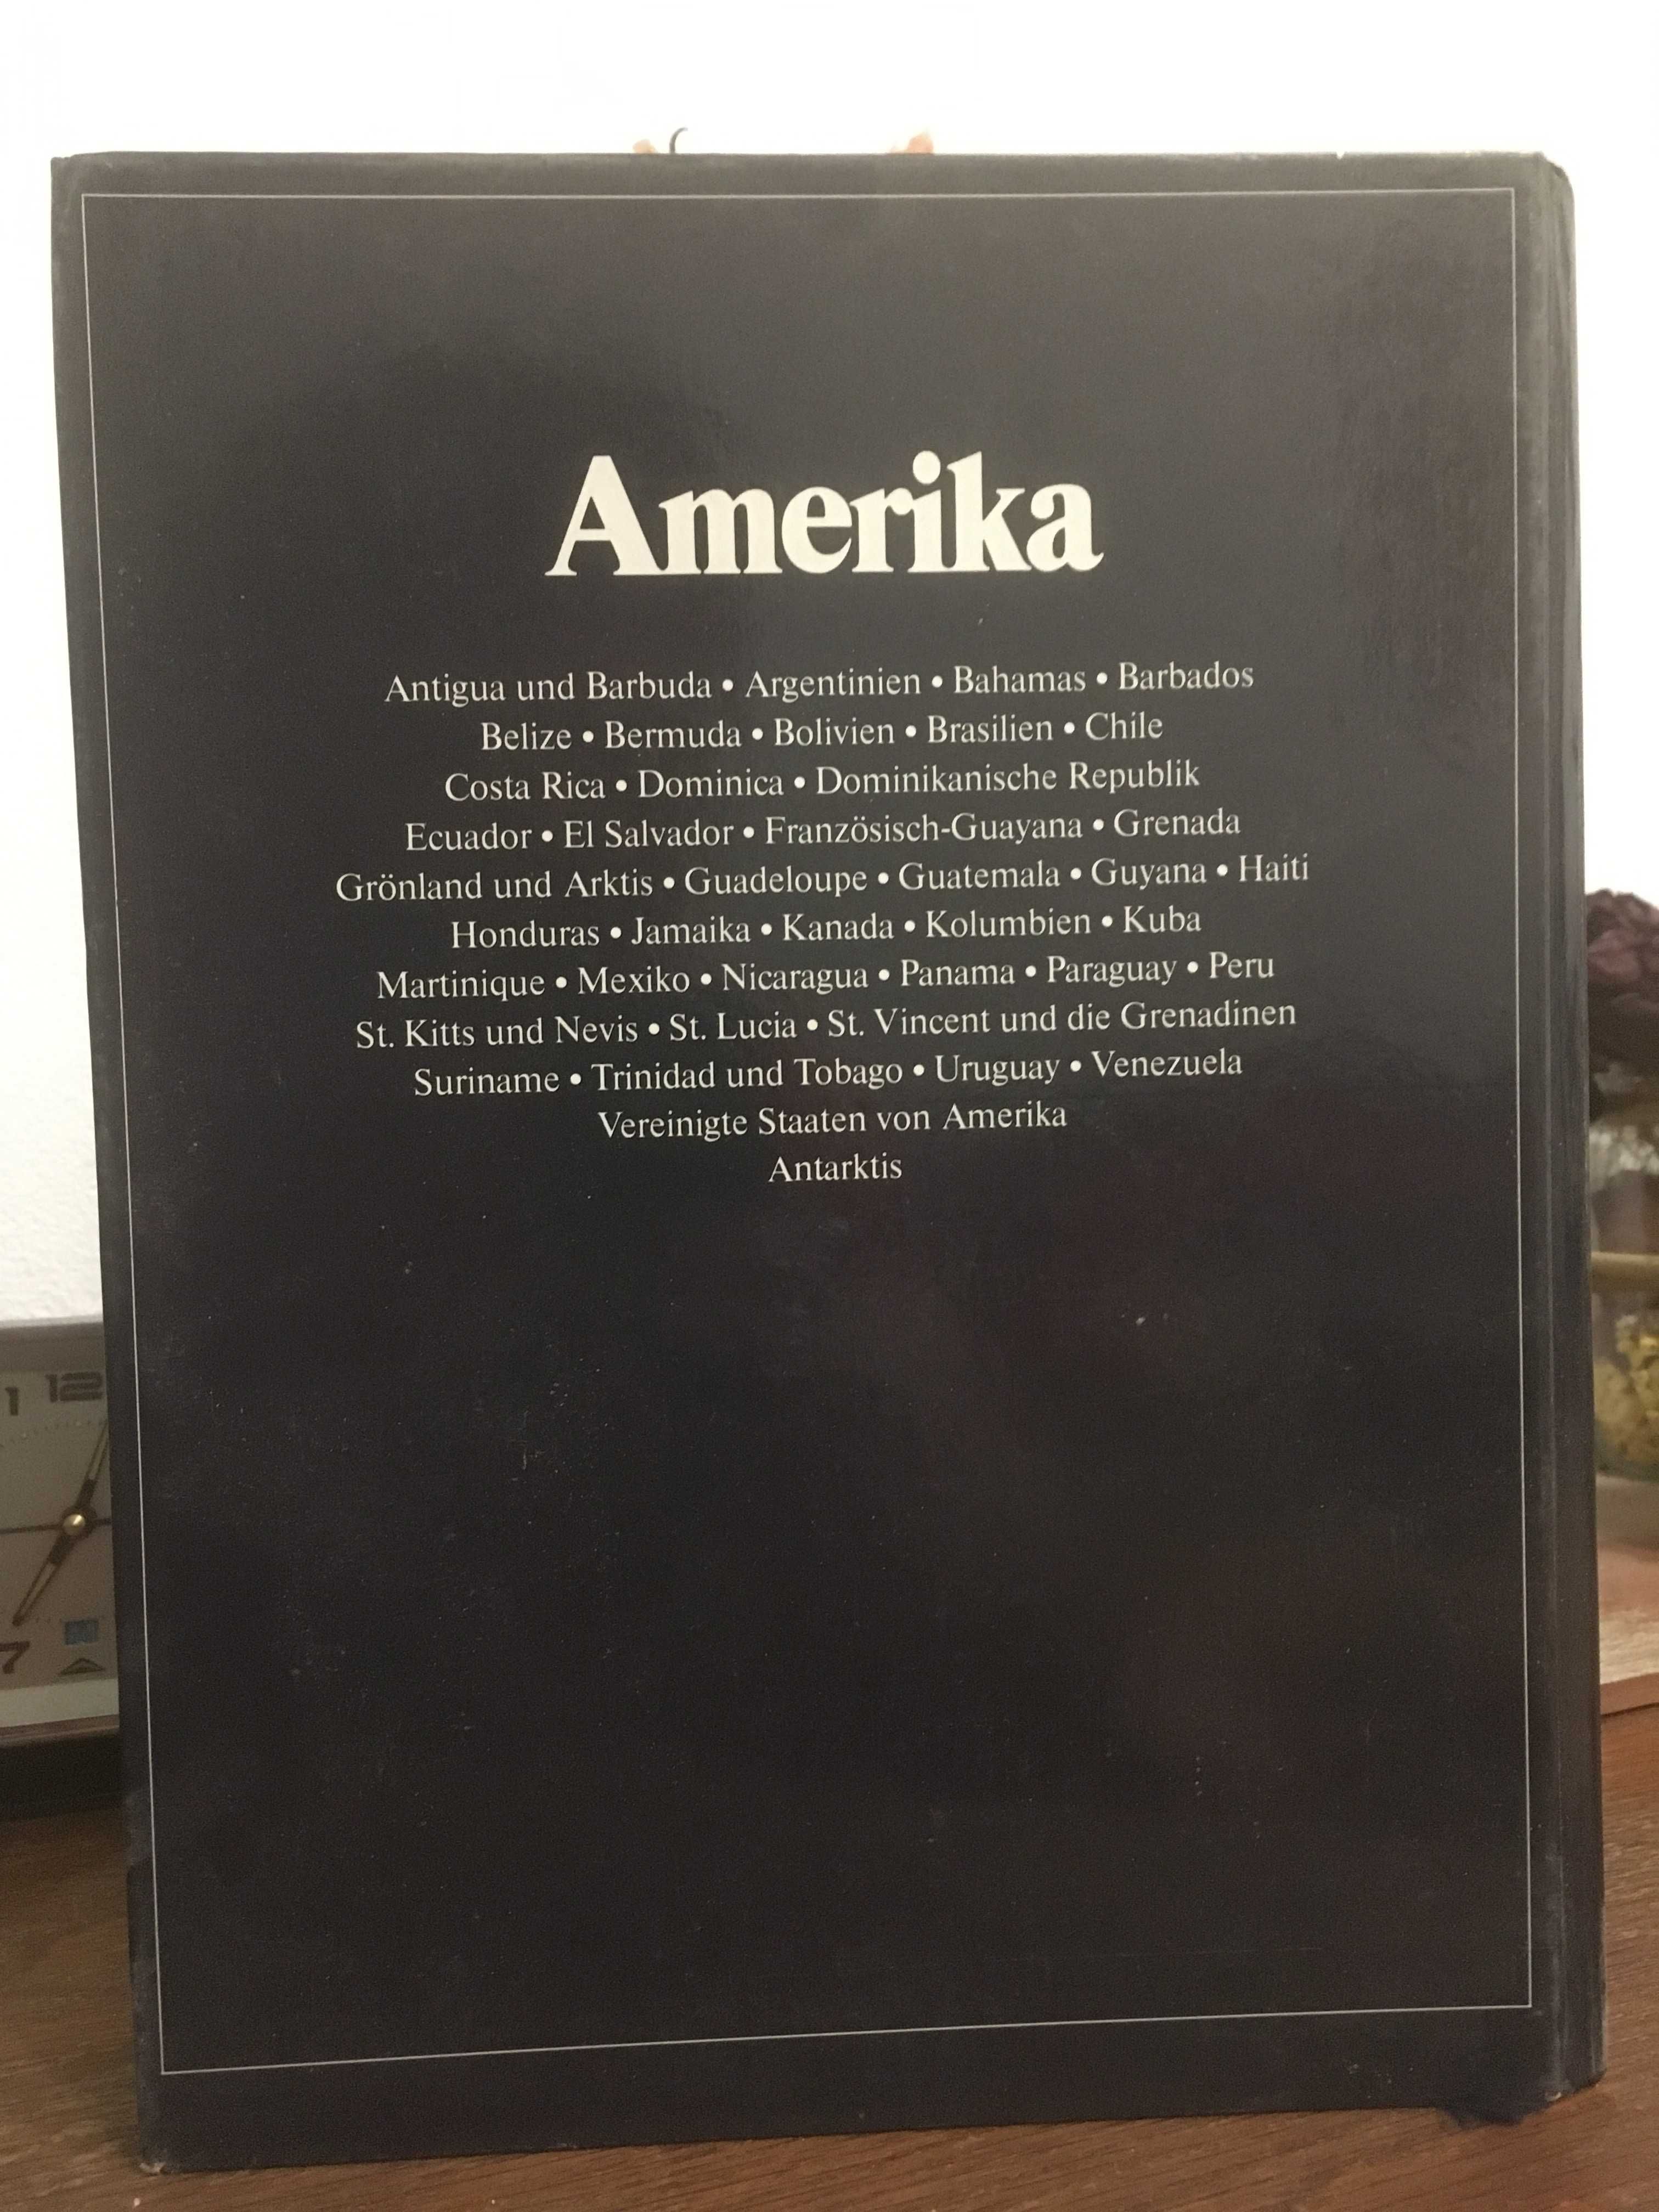 Енциклопедия "Amerika - Von Alaska bis Feuerland